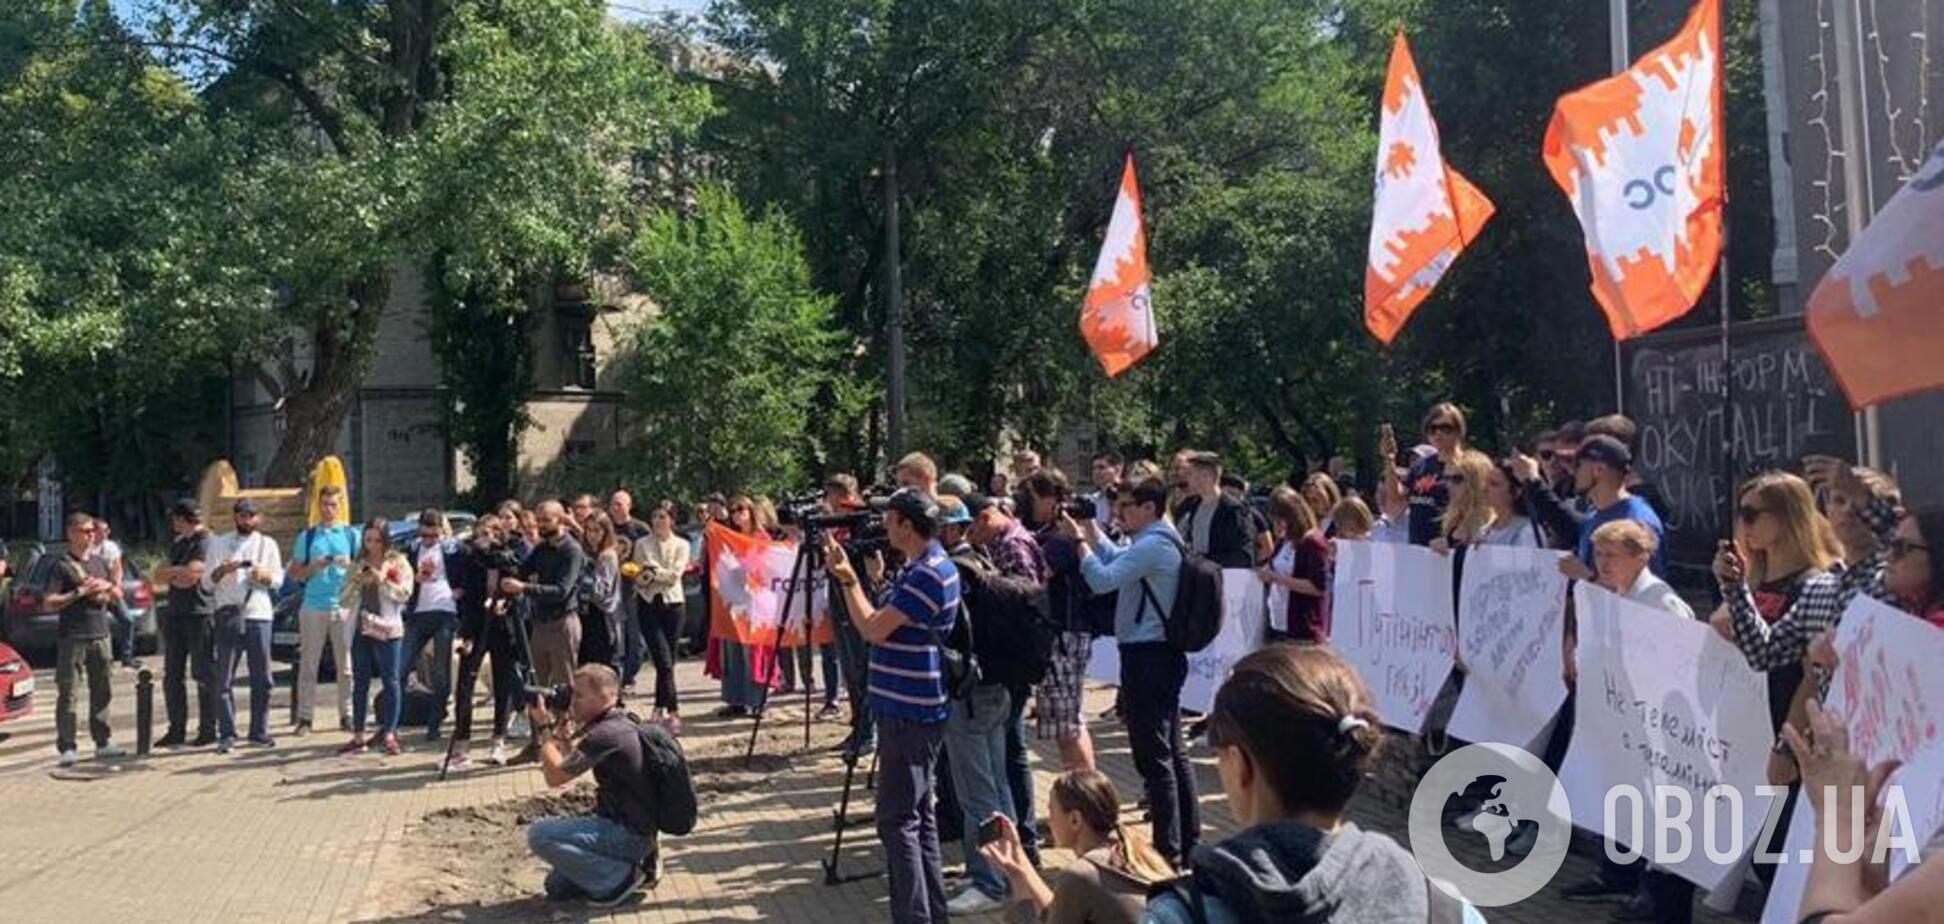 Телемост с пропагандистами: в Киеве собрался митинг под телеканалом